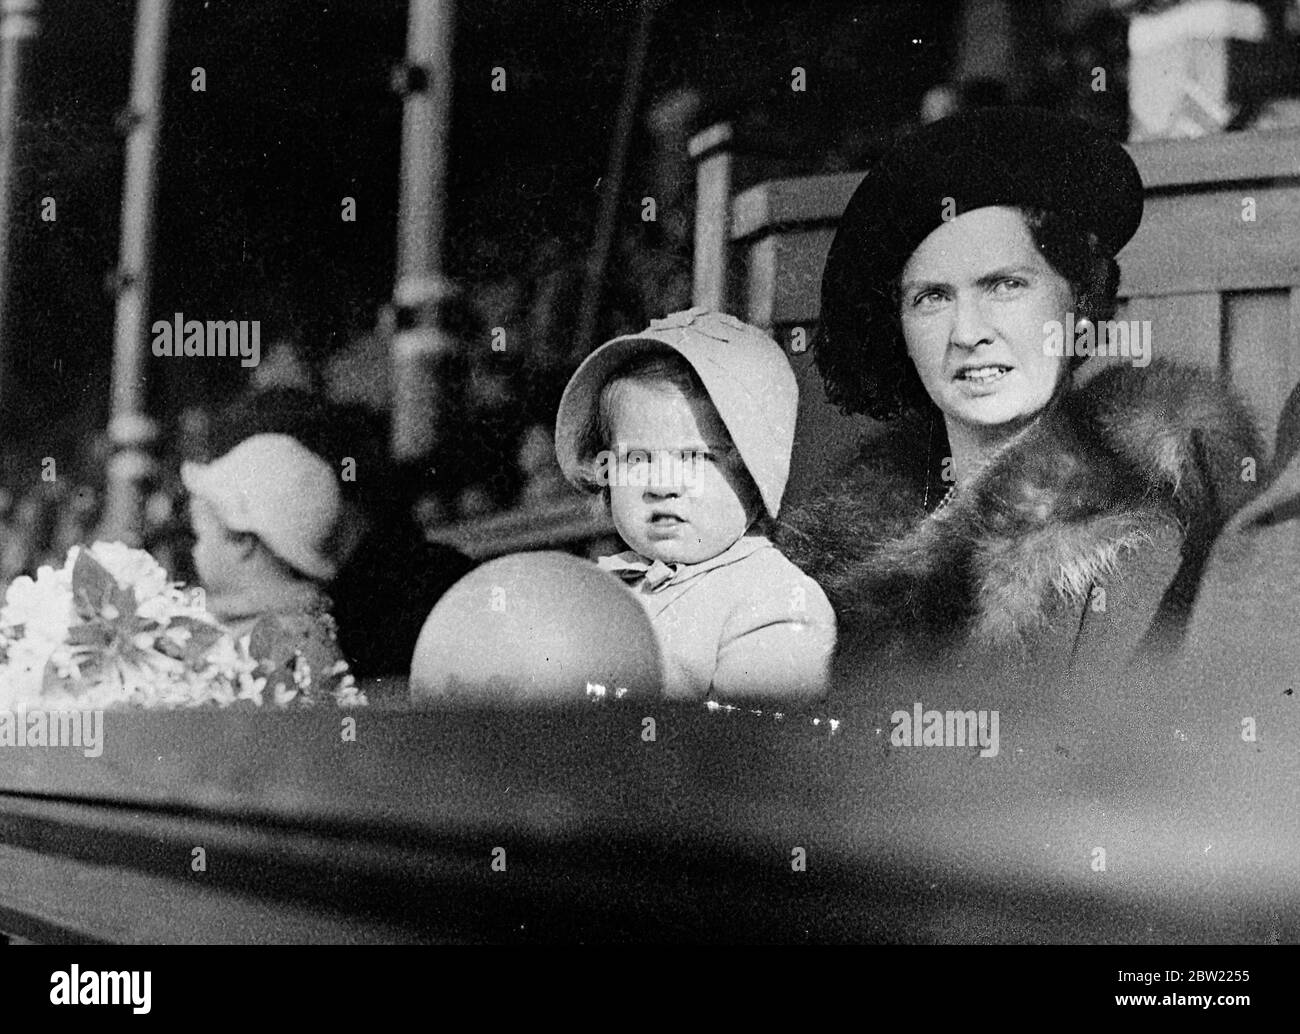 La petite princesse Margaretha de Suède oublie son ballon de jouet comme elle suit avec l'attention de raft une parade des rois de Suède au stade de Stockholm, où la Journée des enfants a été célébrée. Avec la petite princesse est sa mère la princesse Sibylla, épouse du prince Gustaf Adolf, fils du prince héritier. 22 septembre 1937 Banque D'Images